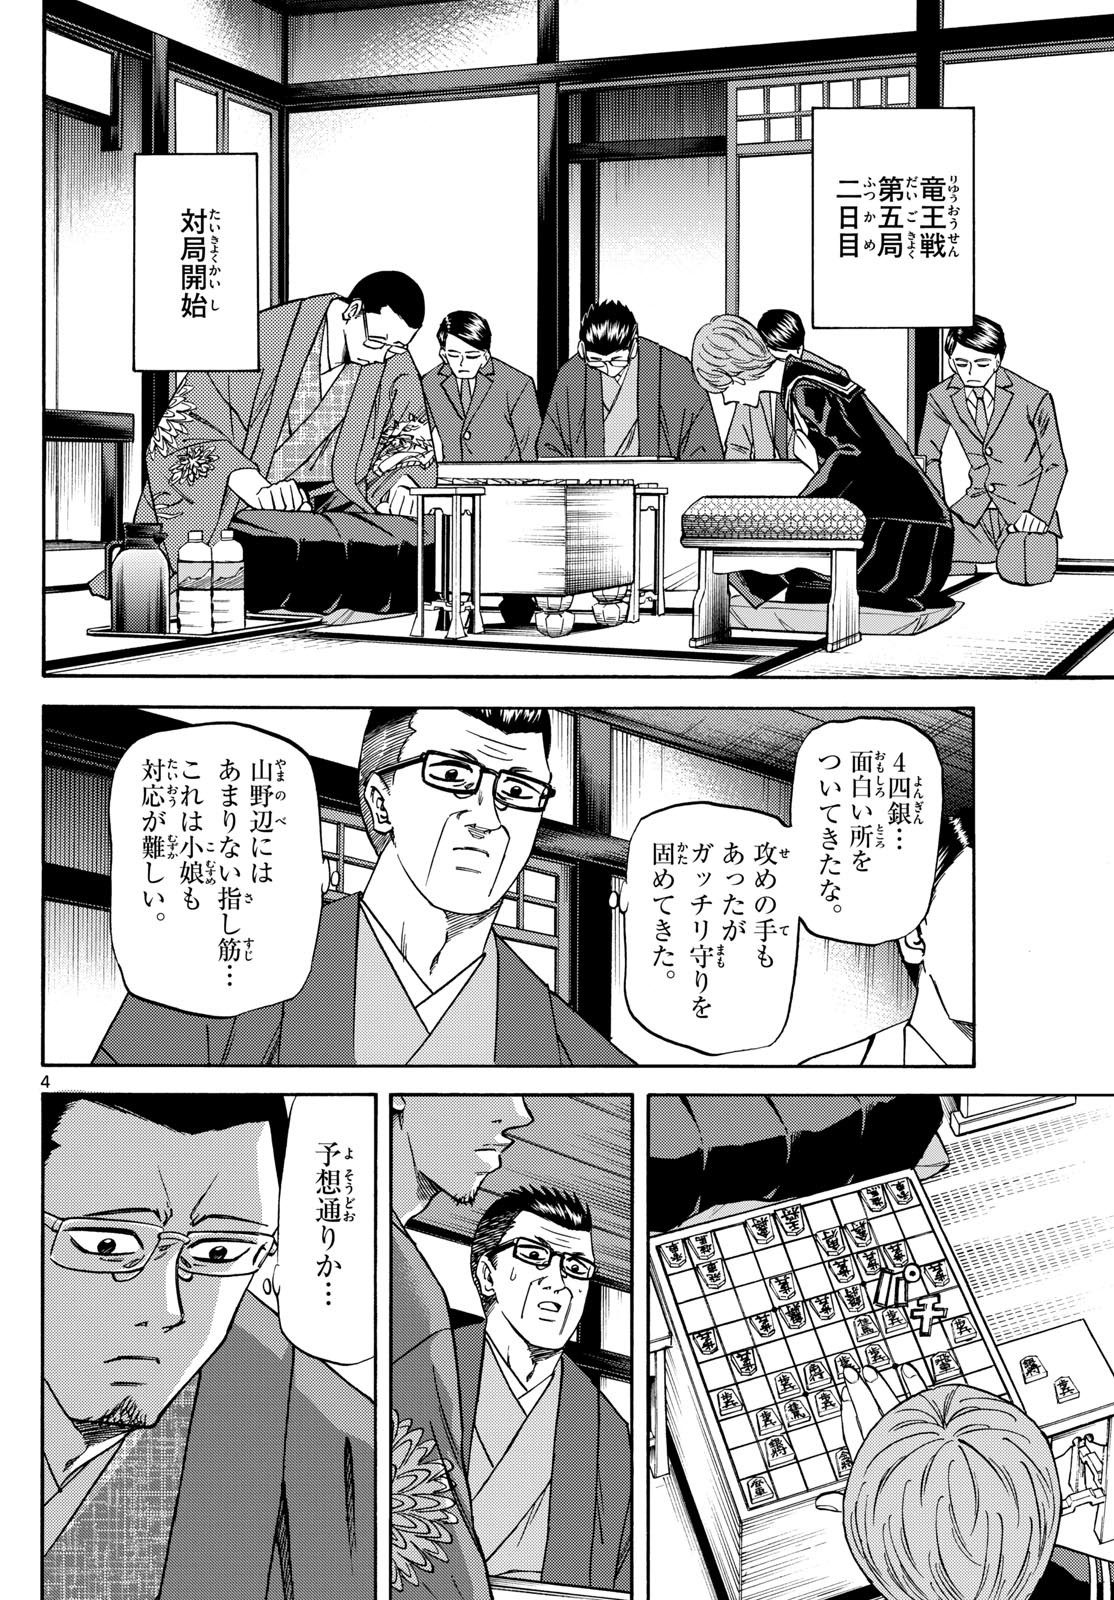 Ryu-to-Ichigo - Chapter 166 - Page 4